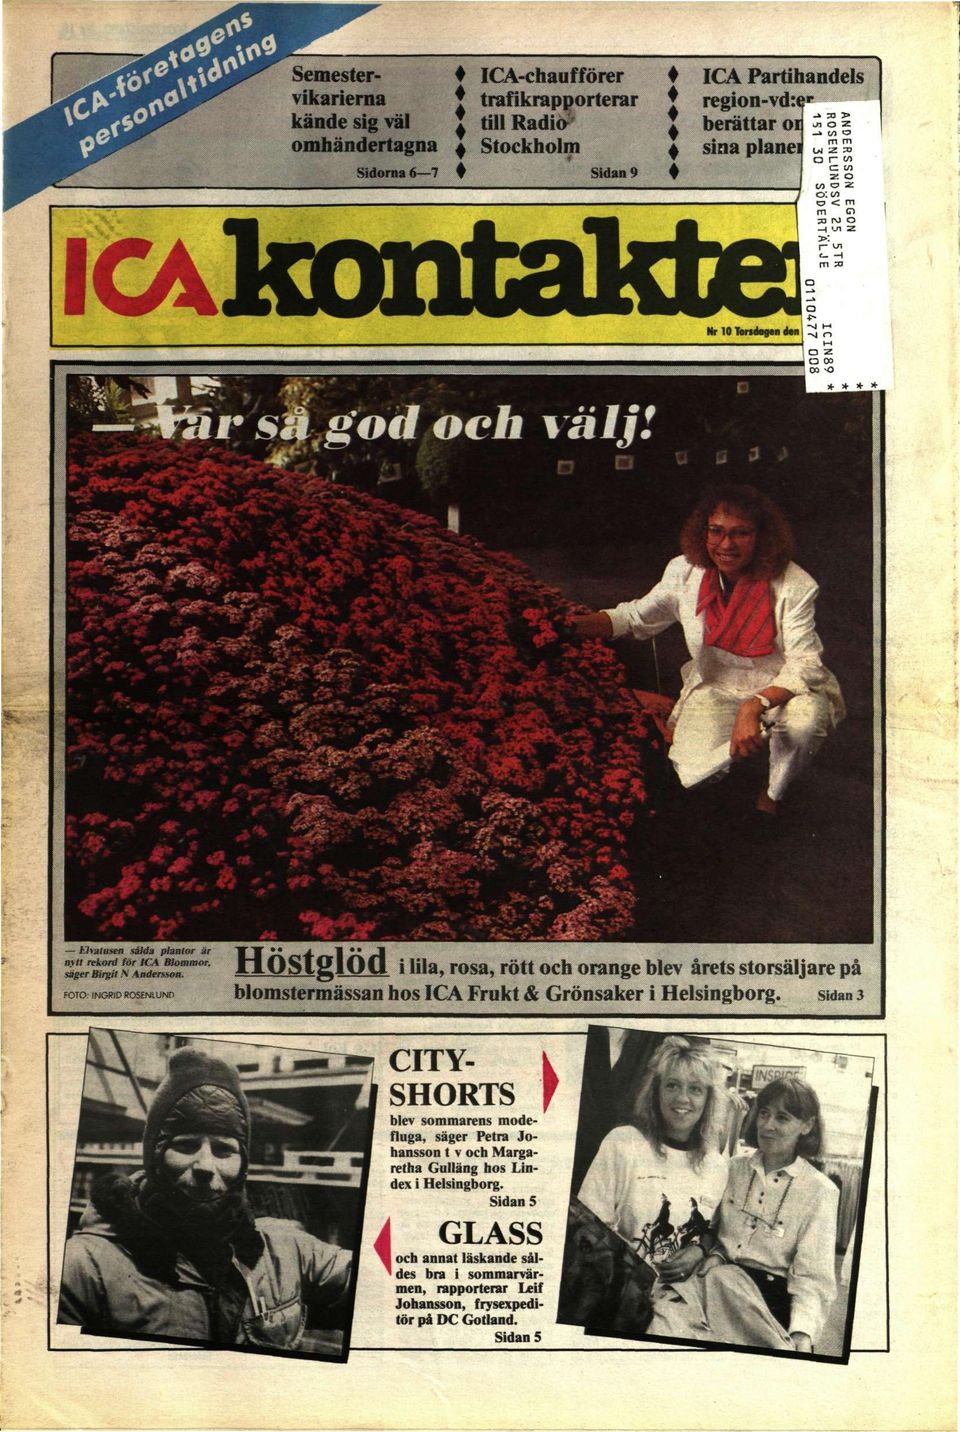 FOTO: INORtO ROSENtUNf> Höstglöd i lila, rosa, rött och orange blev årets storsäljare på blomstermässan hos ICA Frukt & Grönsaker i Helsingborg.